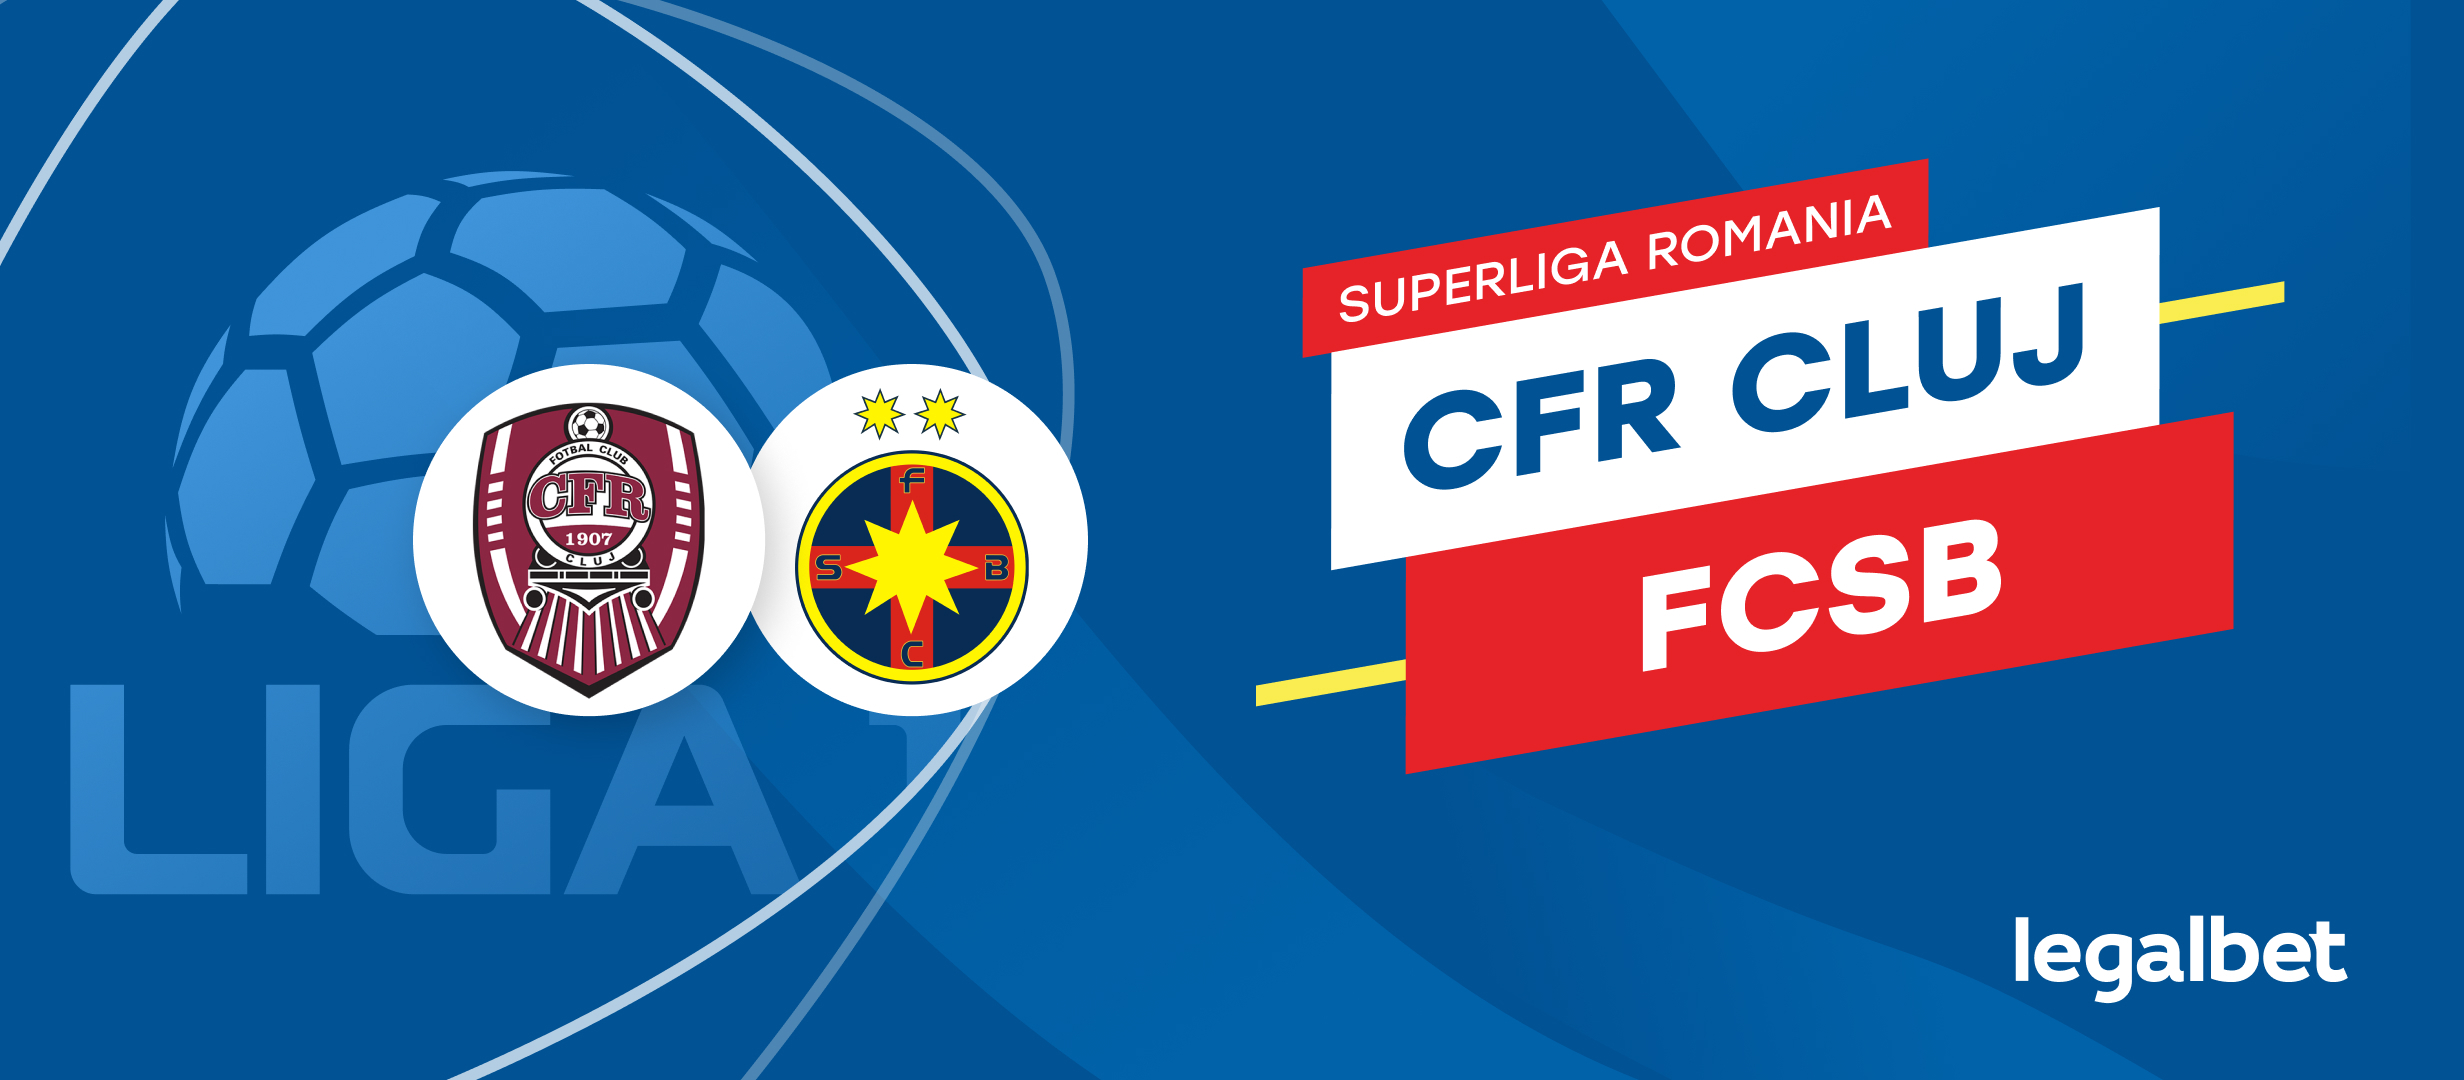 CFR Cluj - FCSB: Ponturi si cote la pariuri